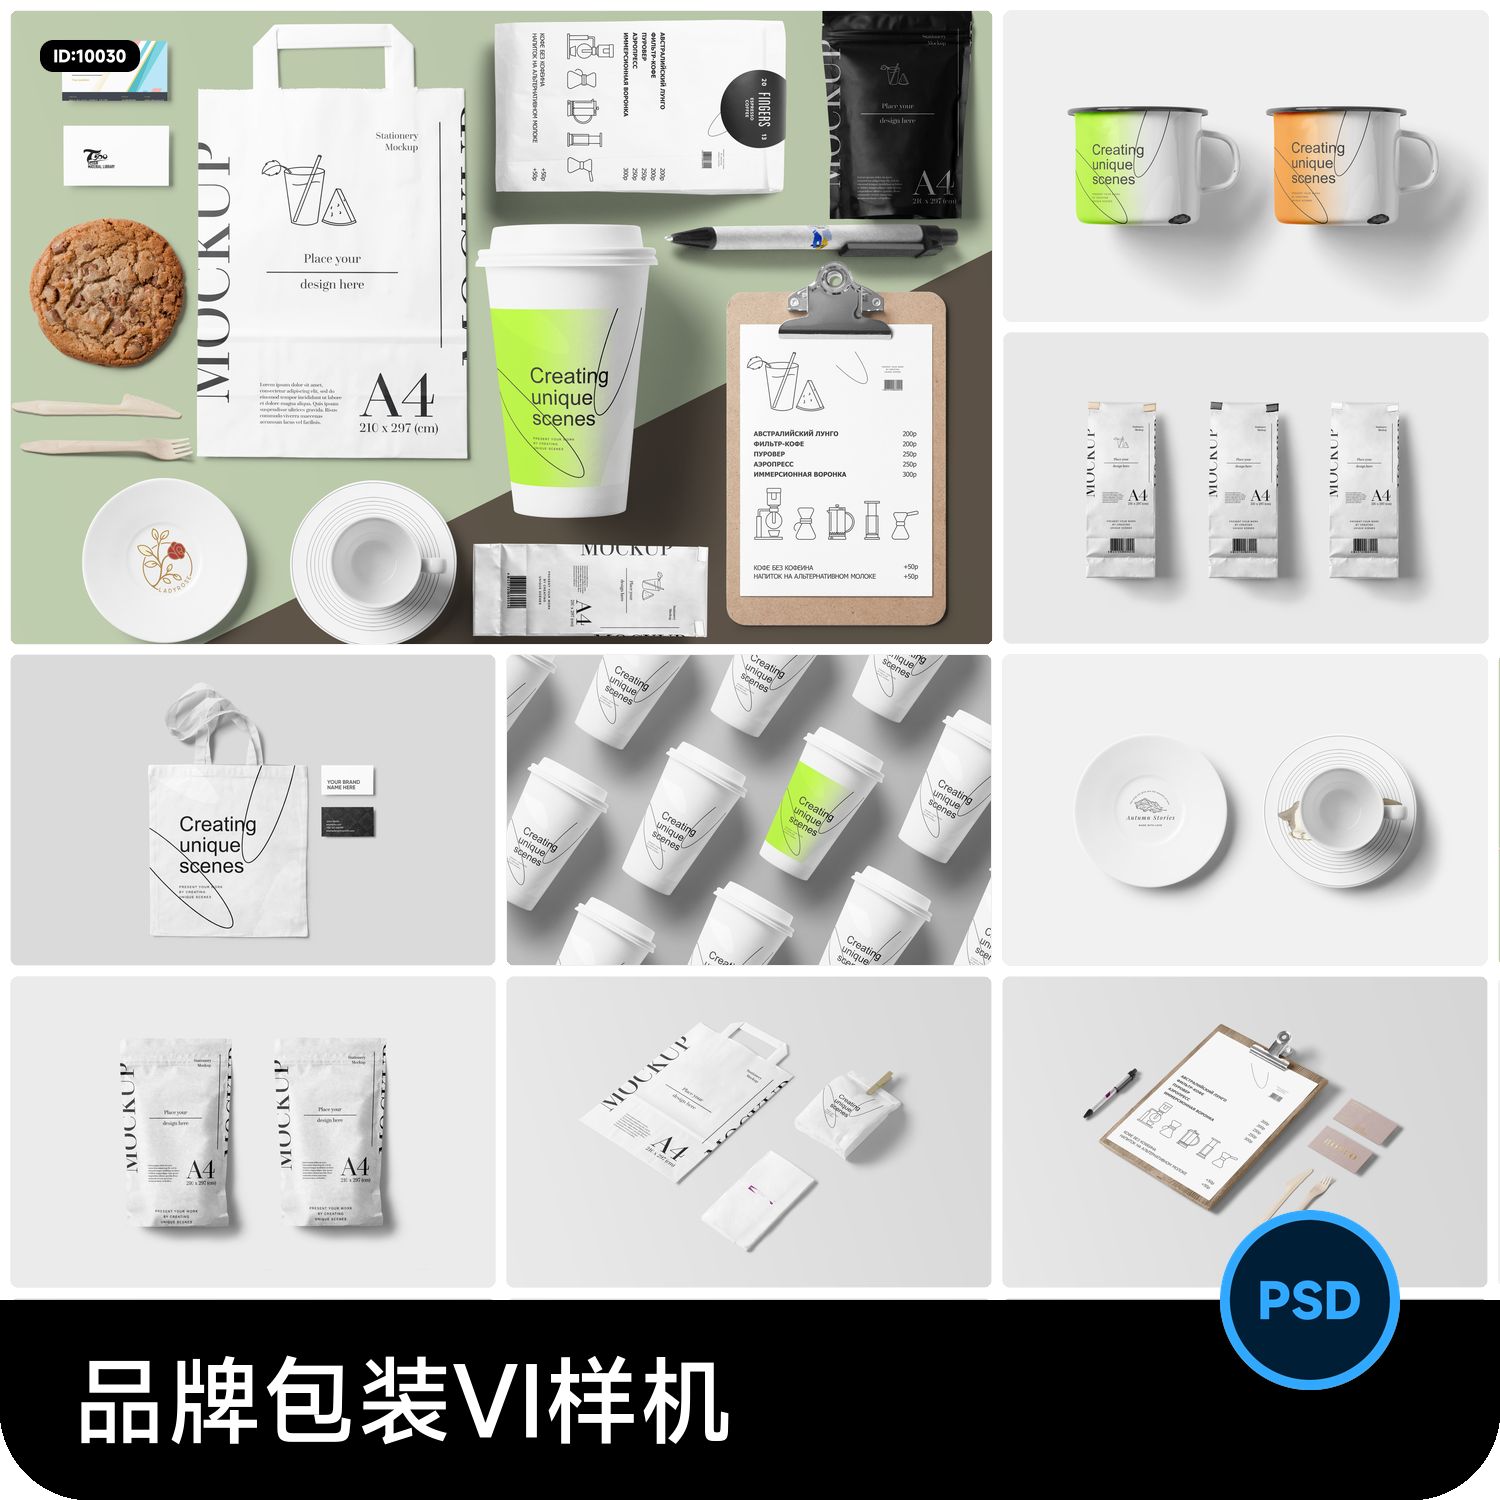 品牌咖啡面包烘焙包装logo设计VI提案效果展示贴图样机PSD素材